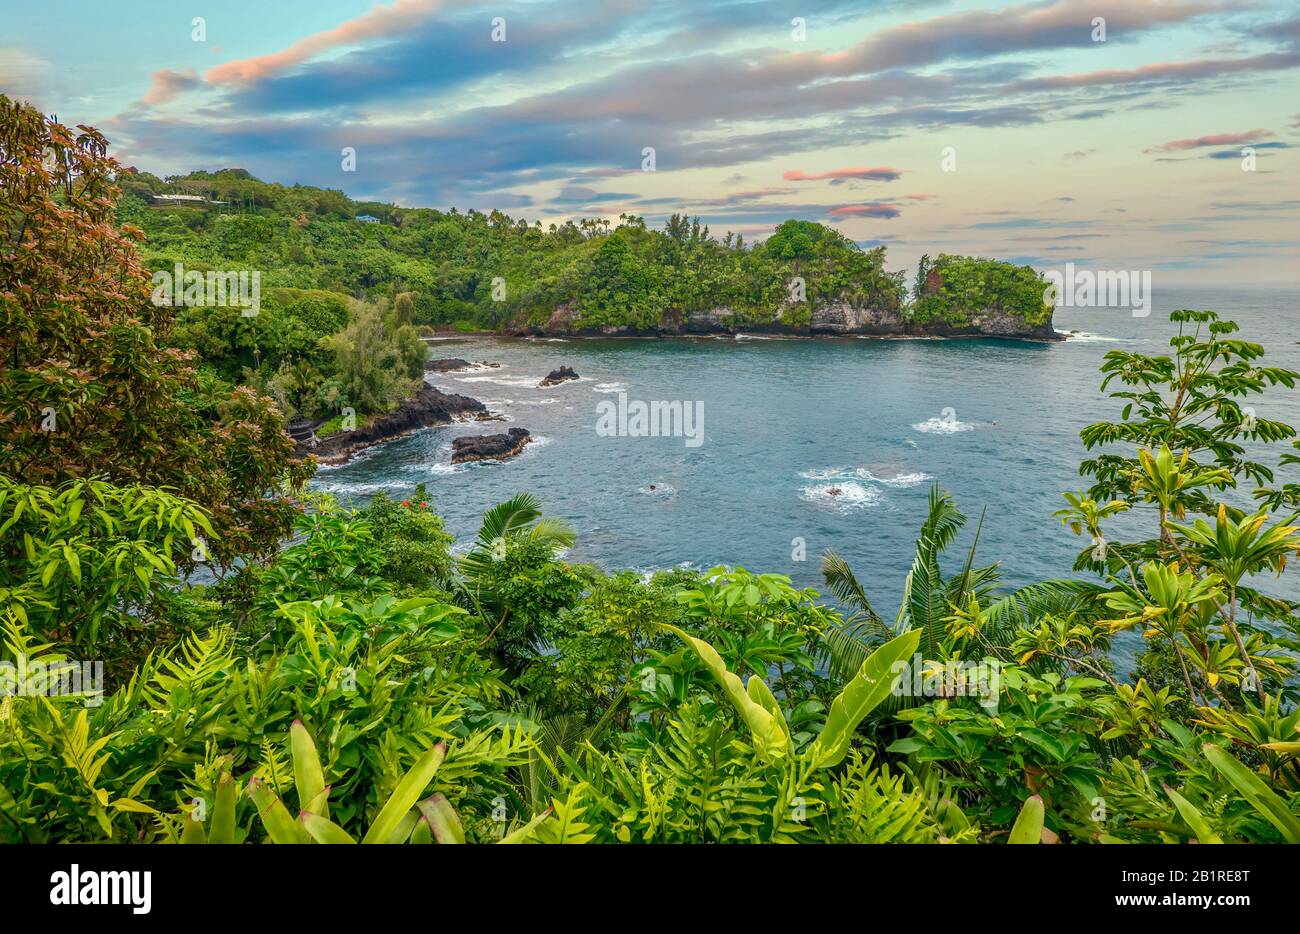 Una splendida baia isolata vicino Hilo, Hawaii, con lussureggiante vegetazione tropicale e pittoresco paesaggio. Foto Stock